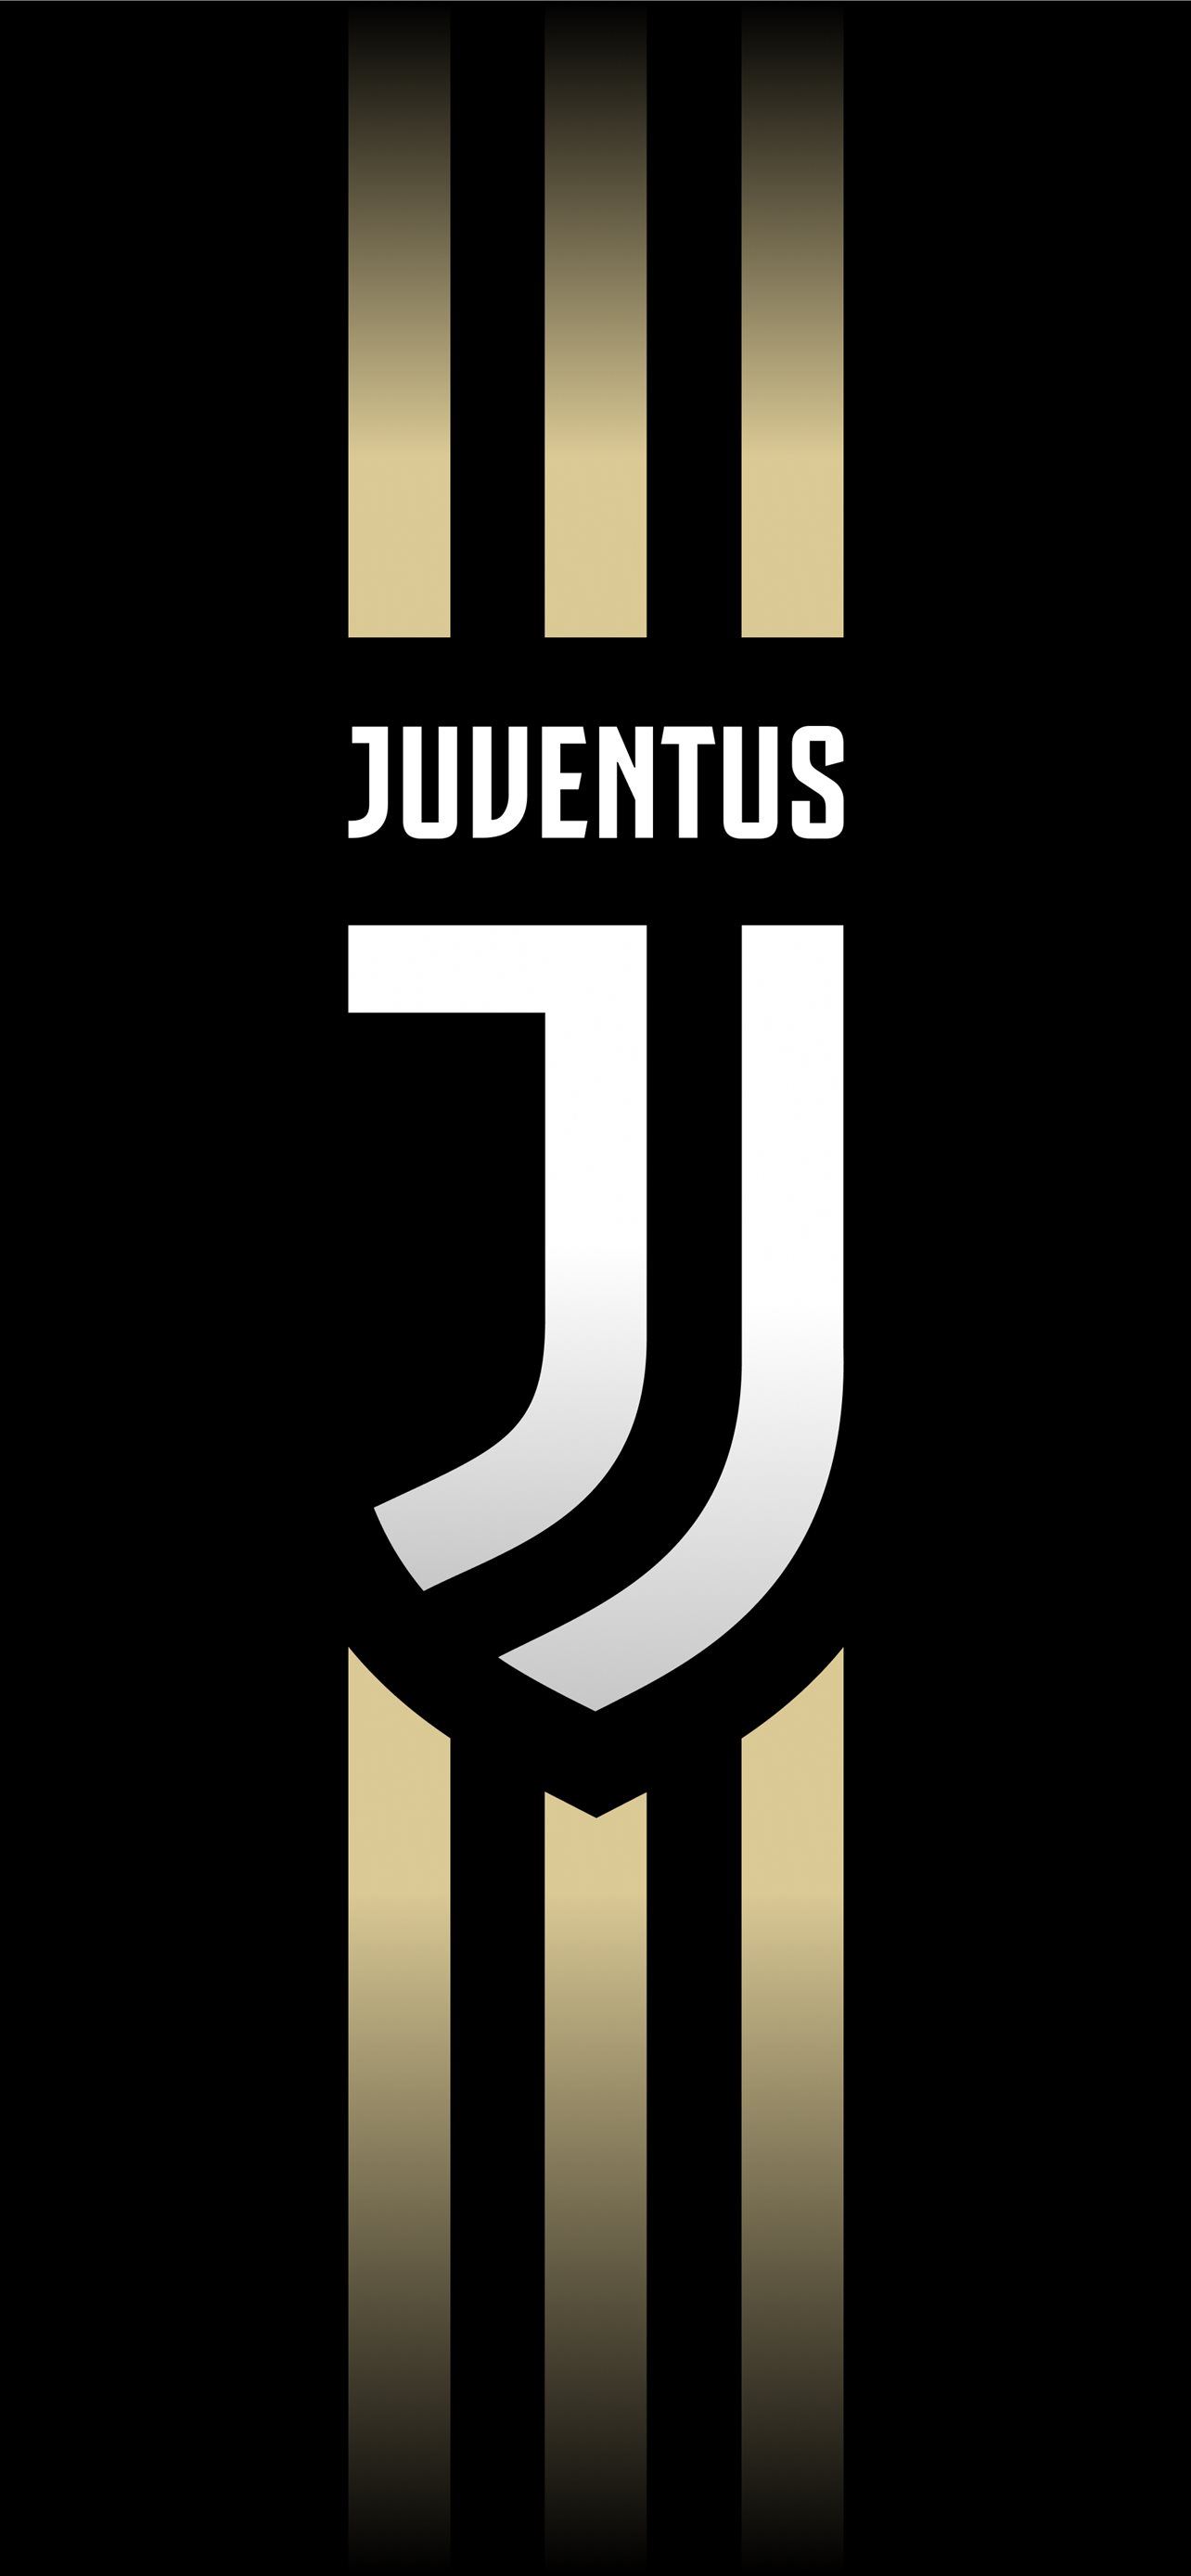 Juventus iPhone Wallpapers Free Download